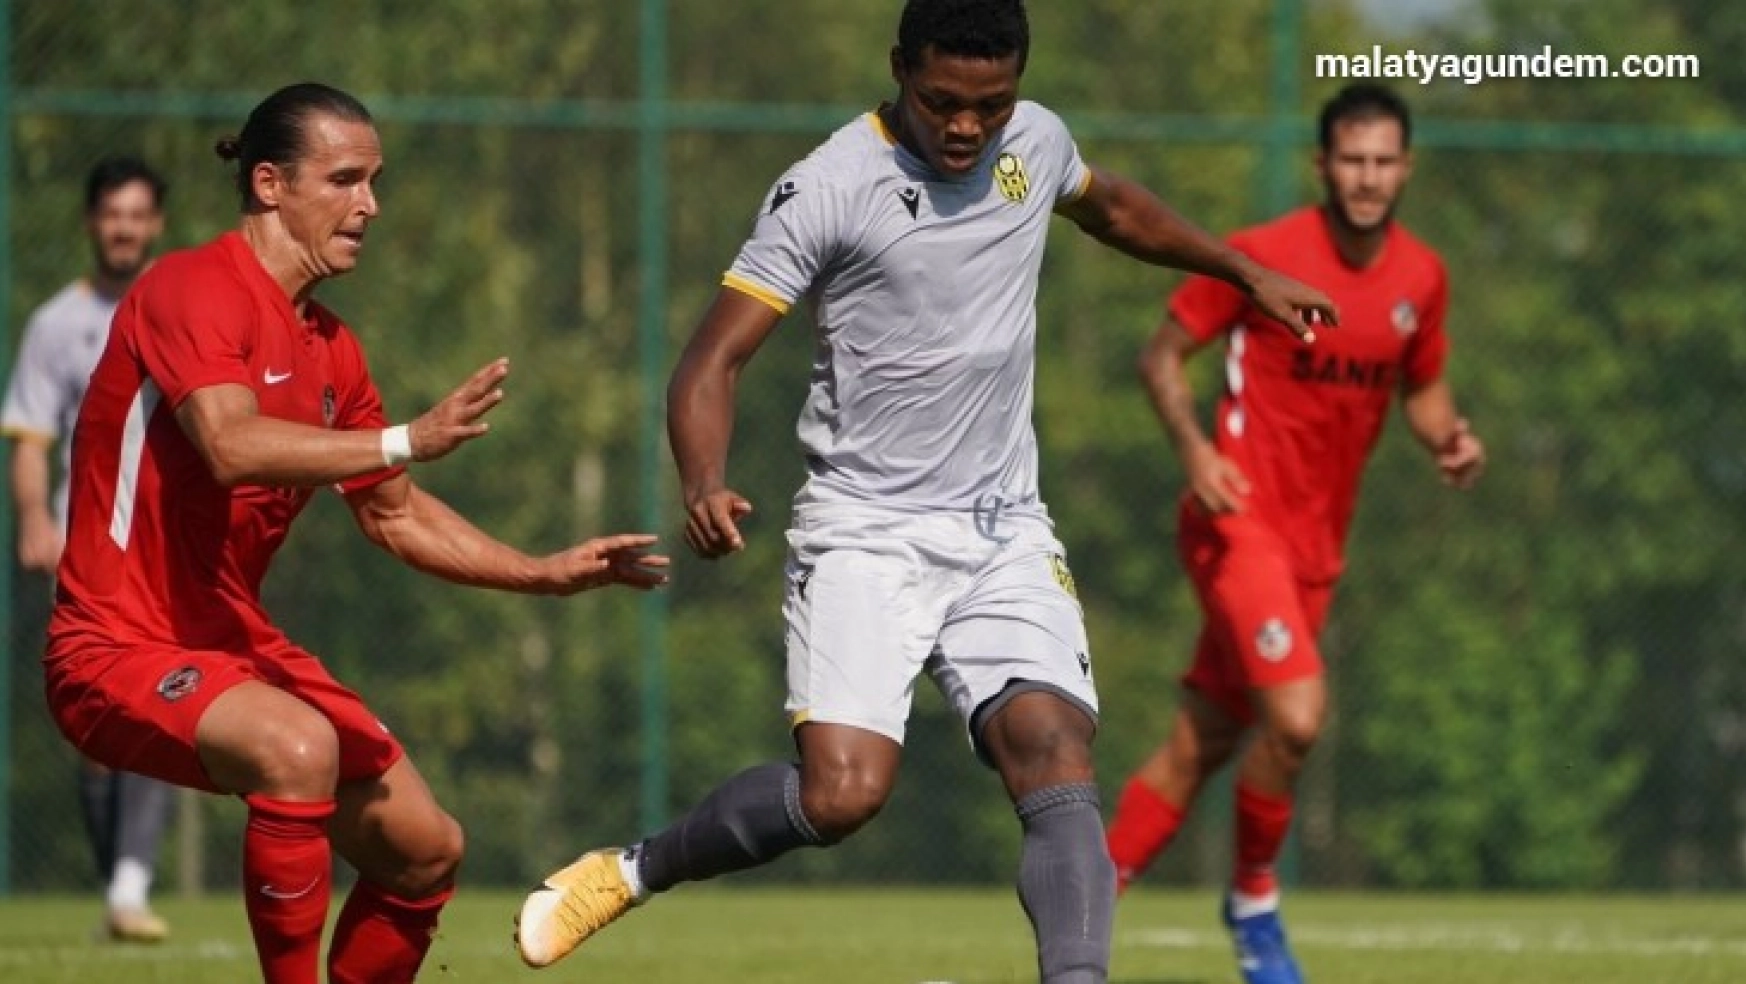 Yeni Malatyaspor, Başakşehir ile hazırlık maçı oynayacak